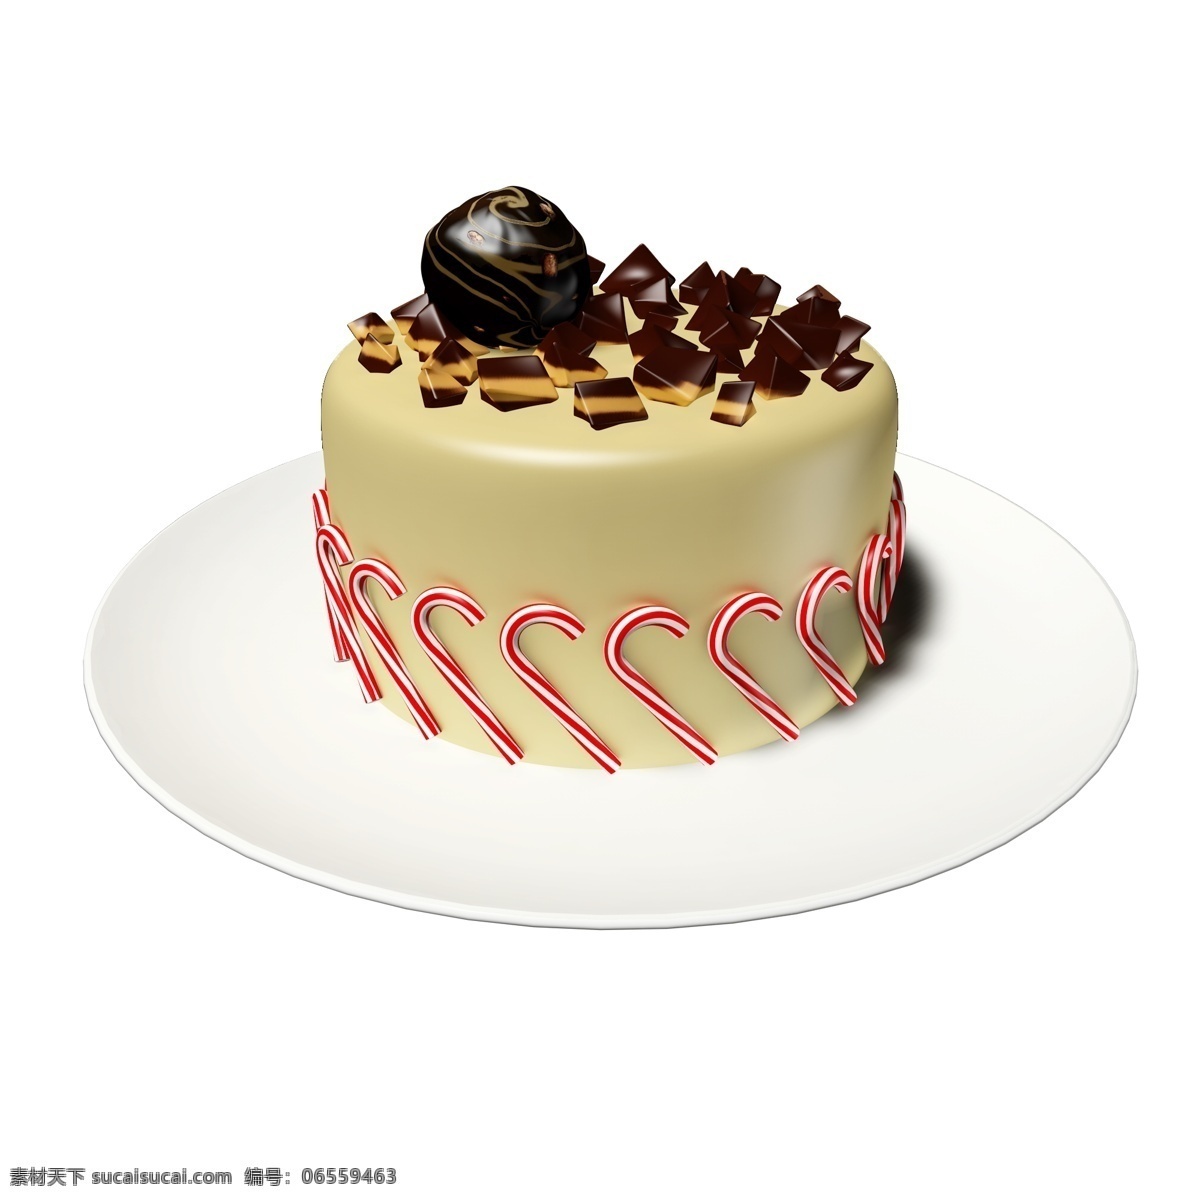 彩色 立体 食品 通用 元素 巧克力 糖果 蛋糕 红色 咖啡色 条纹